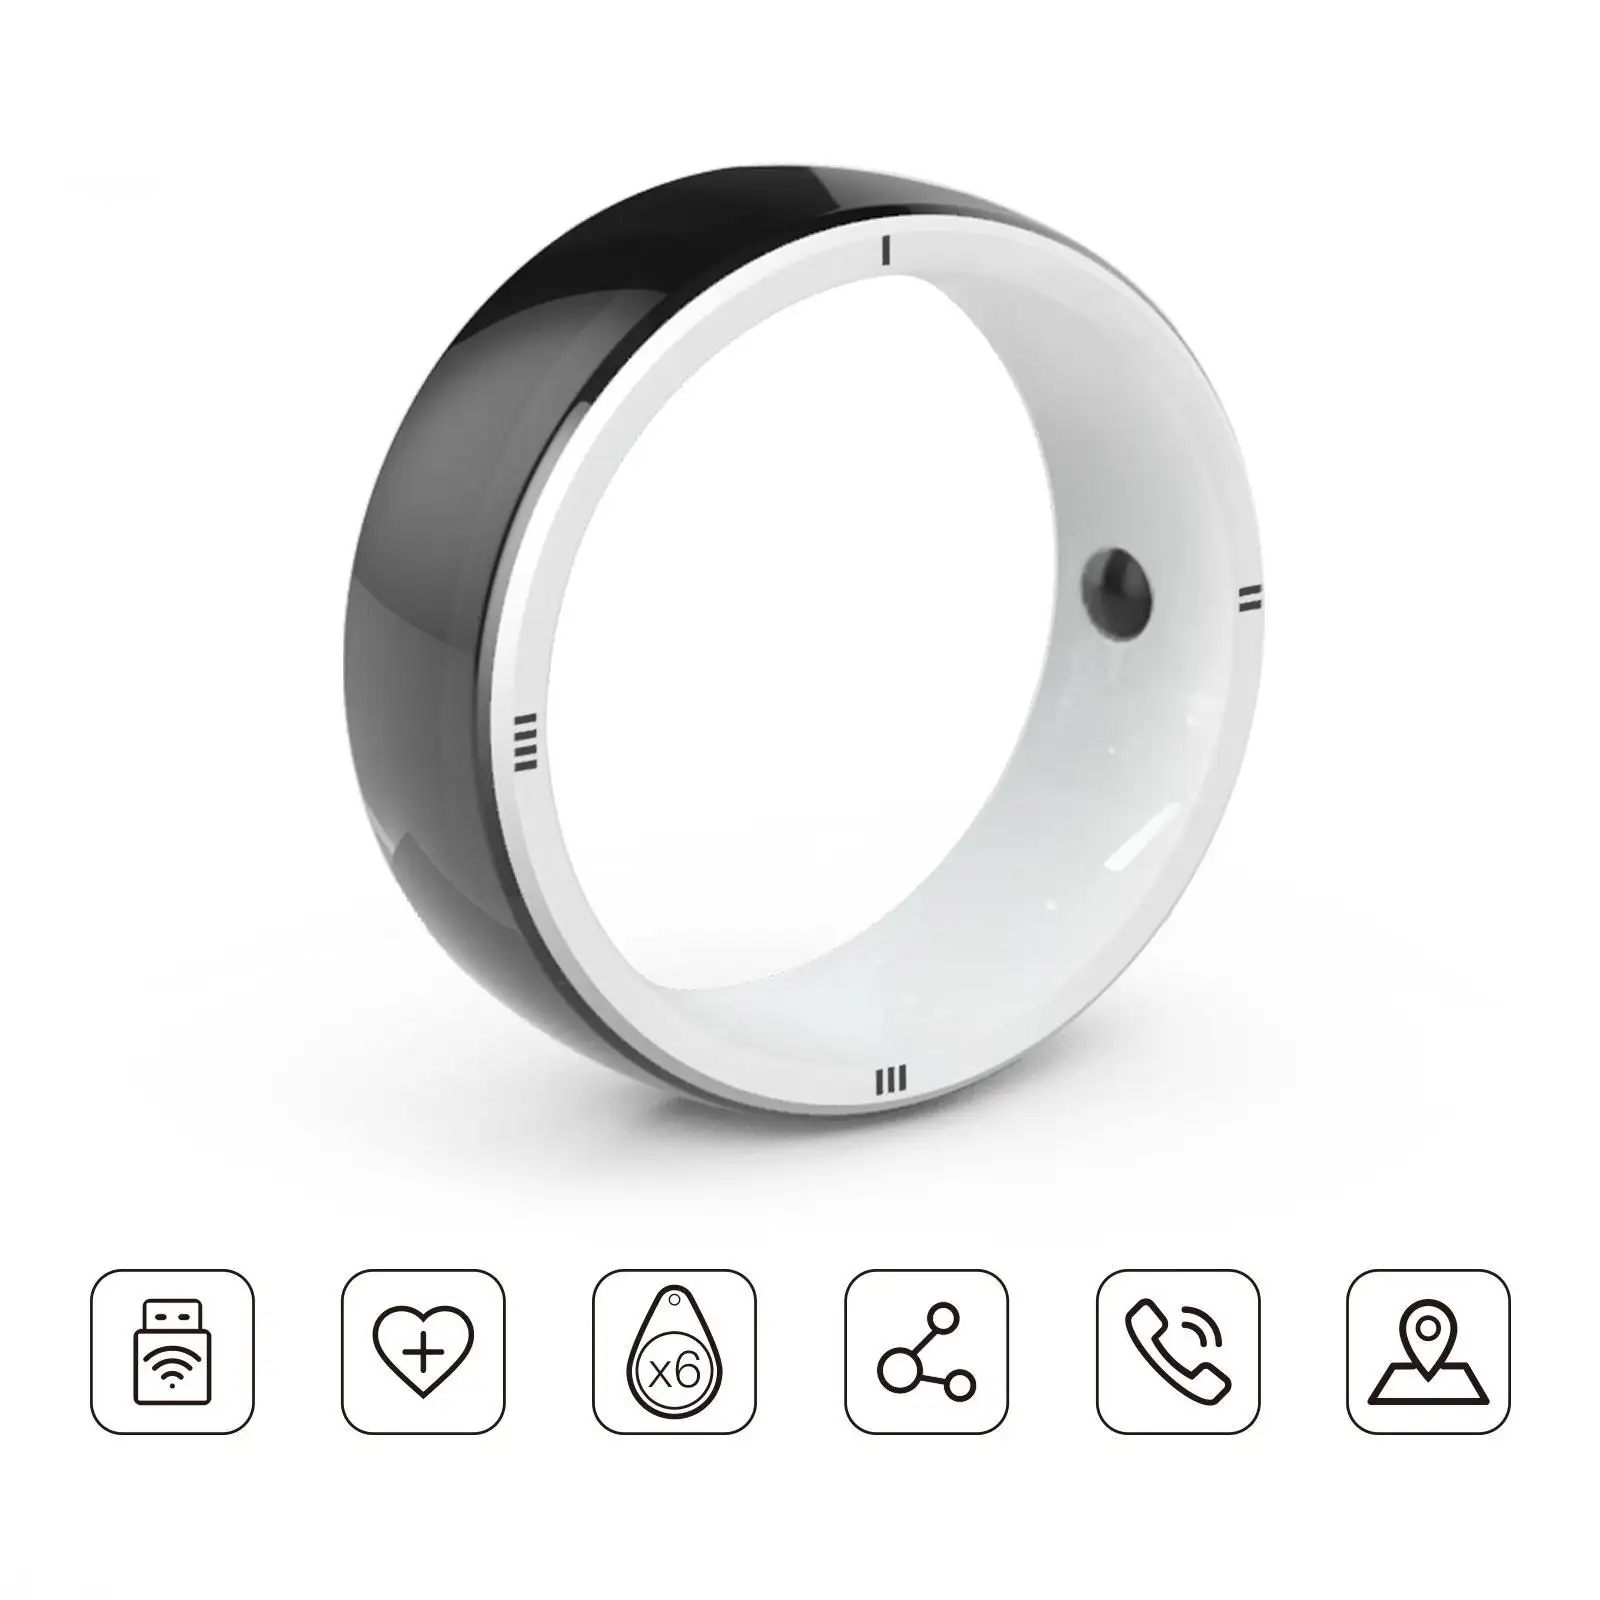 JAKCOM R5 สมาร์ทแหวน ใหม่สมาร์ทแหวน Match ด้วยตนเองชัตเตอร์สายปลดปล่อยโจรสลัด Bay ดาวน์โหลดฟรีซอฟต์แวร์ชุดหูฟัง TWS